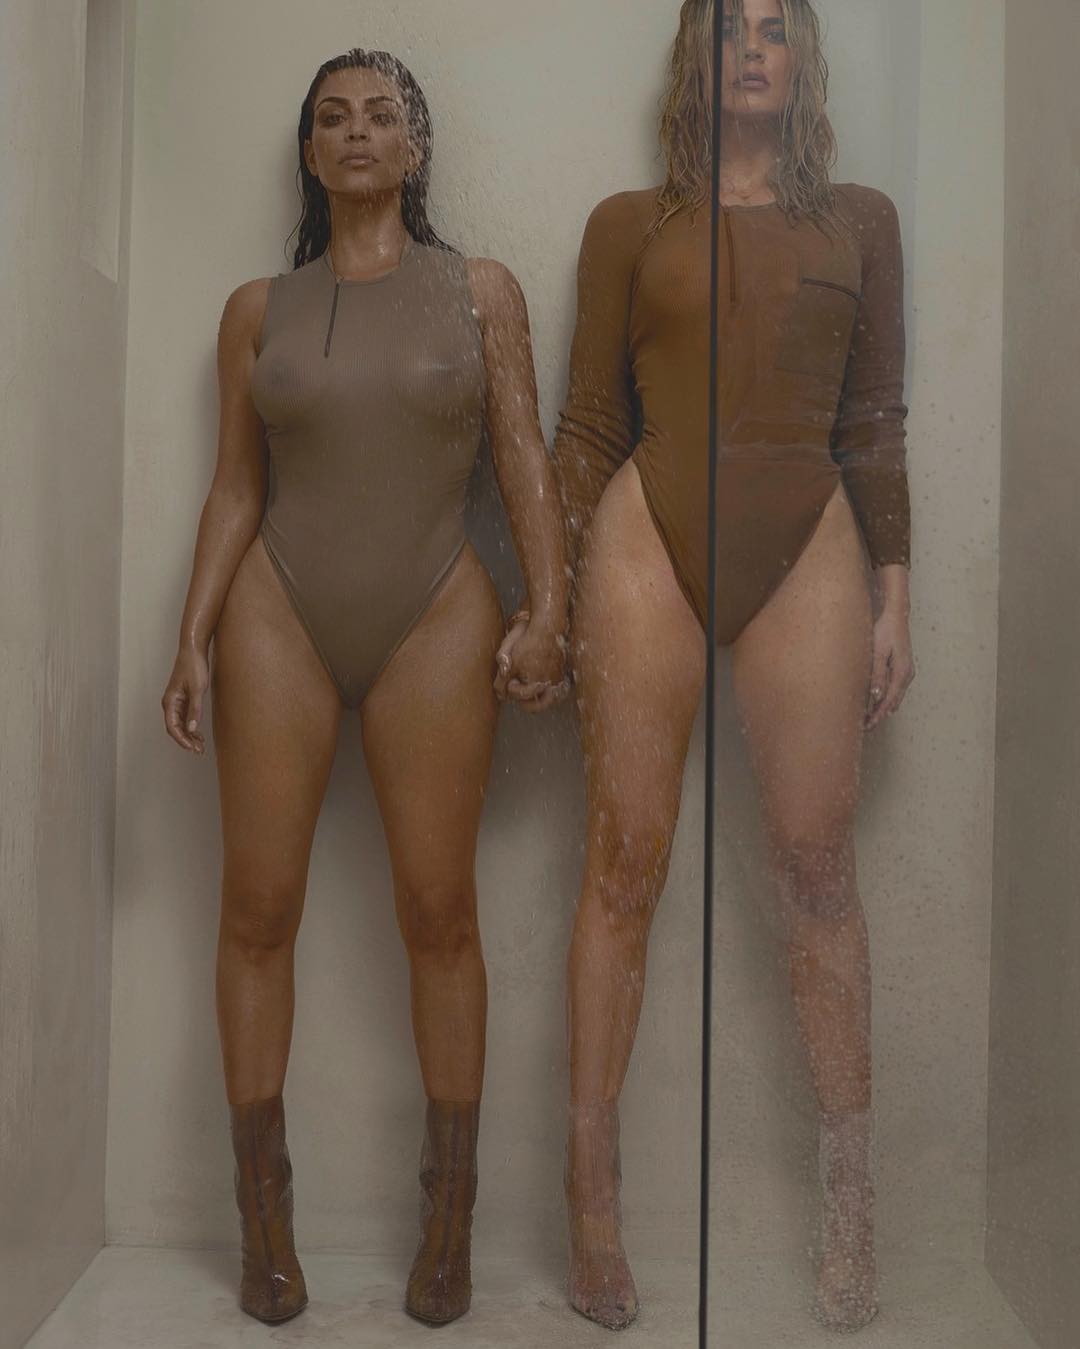 18+ дня: Ким и Хлое Кардашьян в откровенной фотосессии в одежде Канье Уэста...